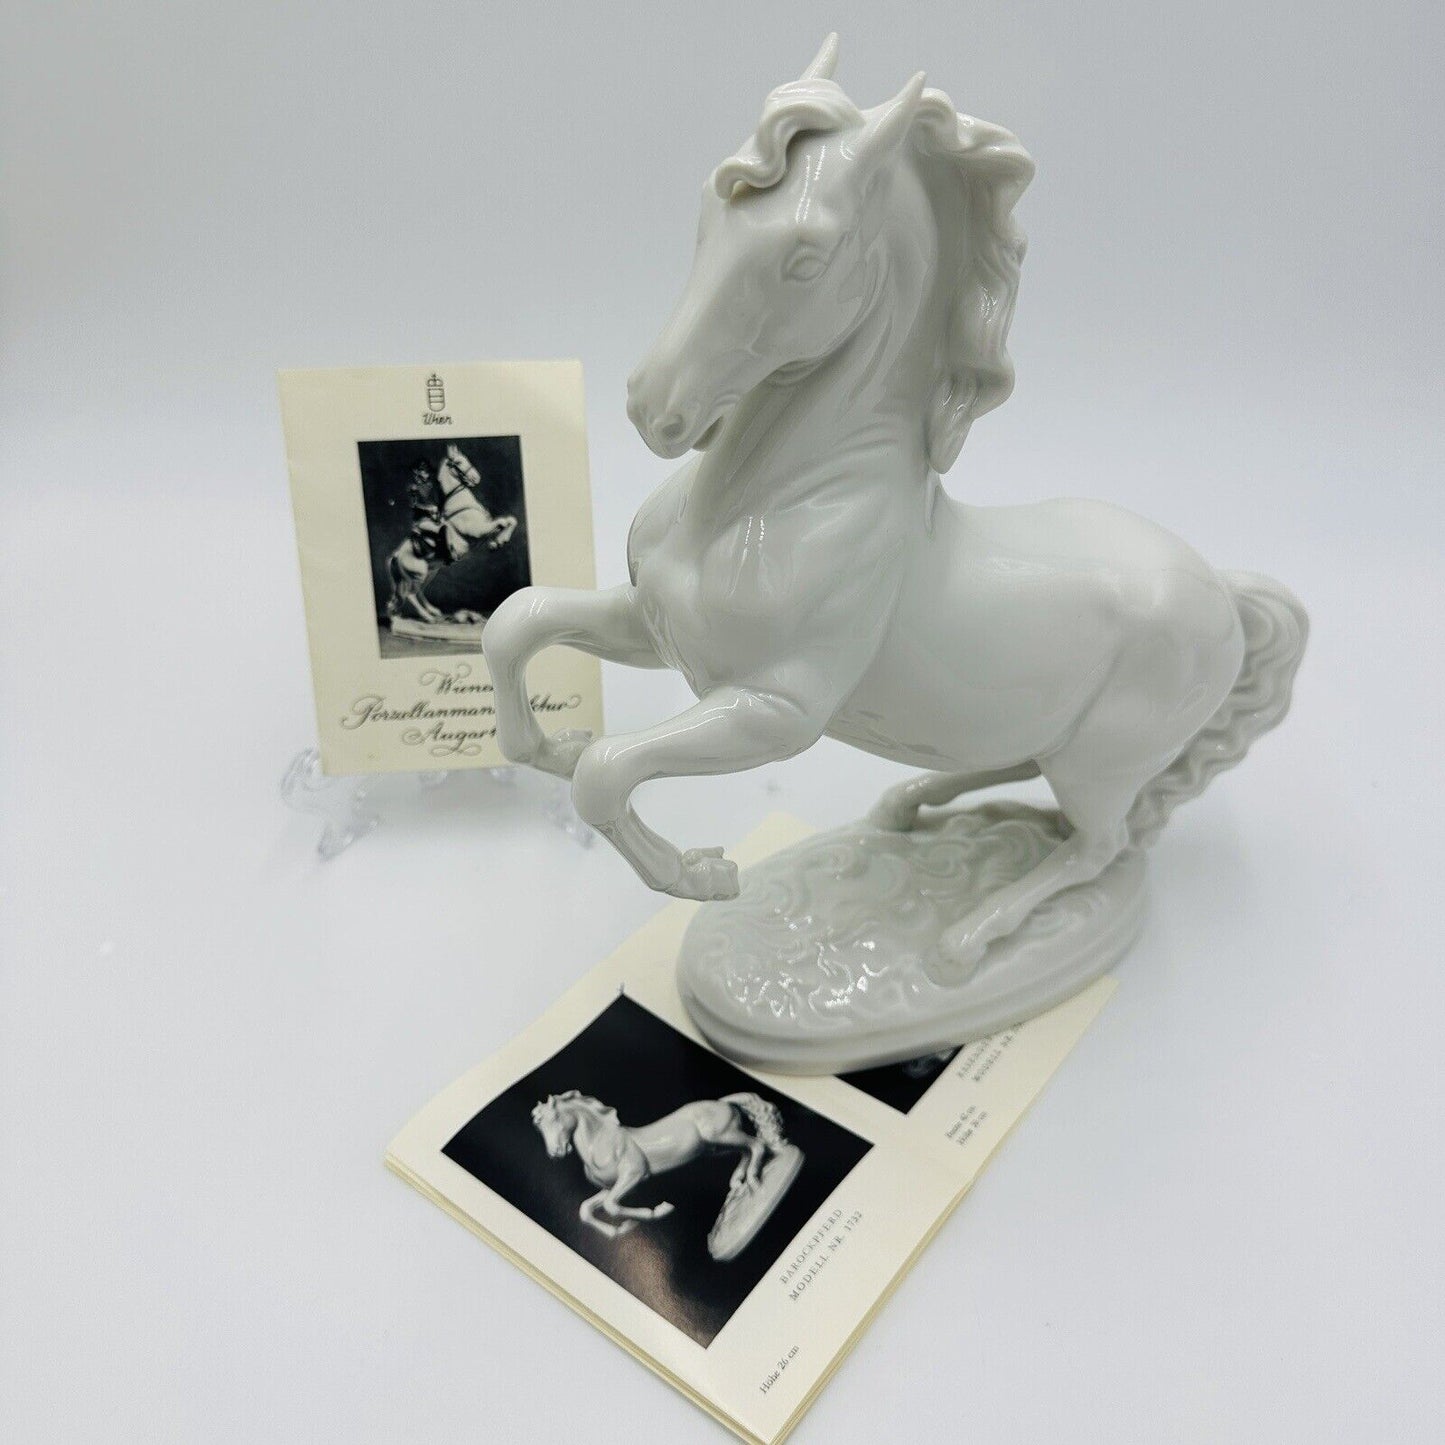 Wien Augarten Horse Sculpture Porcelain Figure Vienna Austria 1937 COA Porzellan